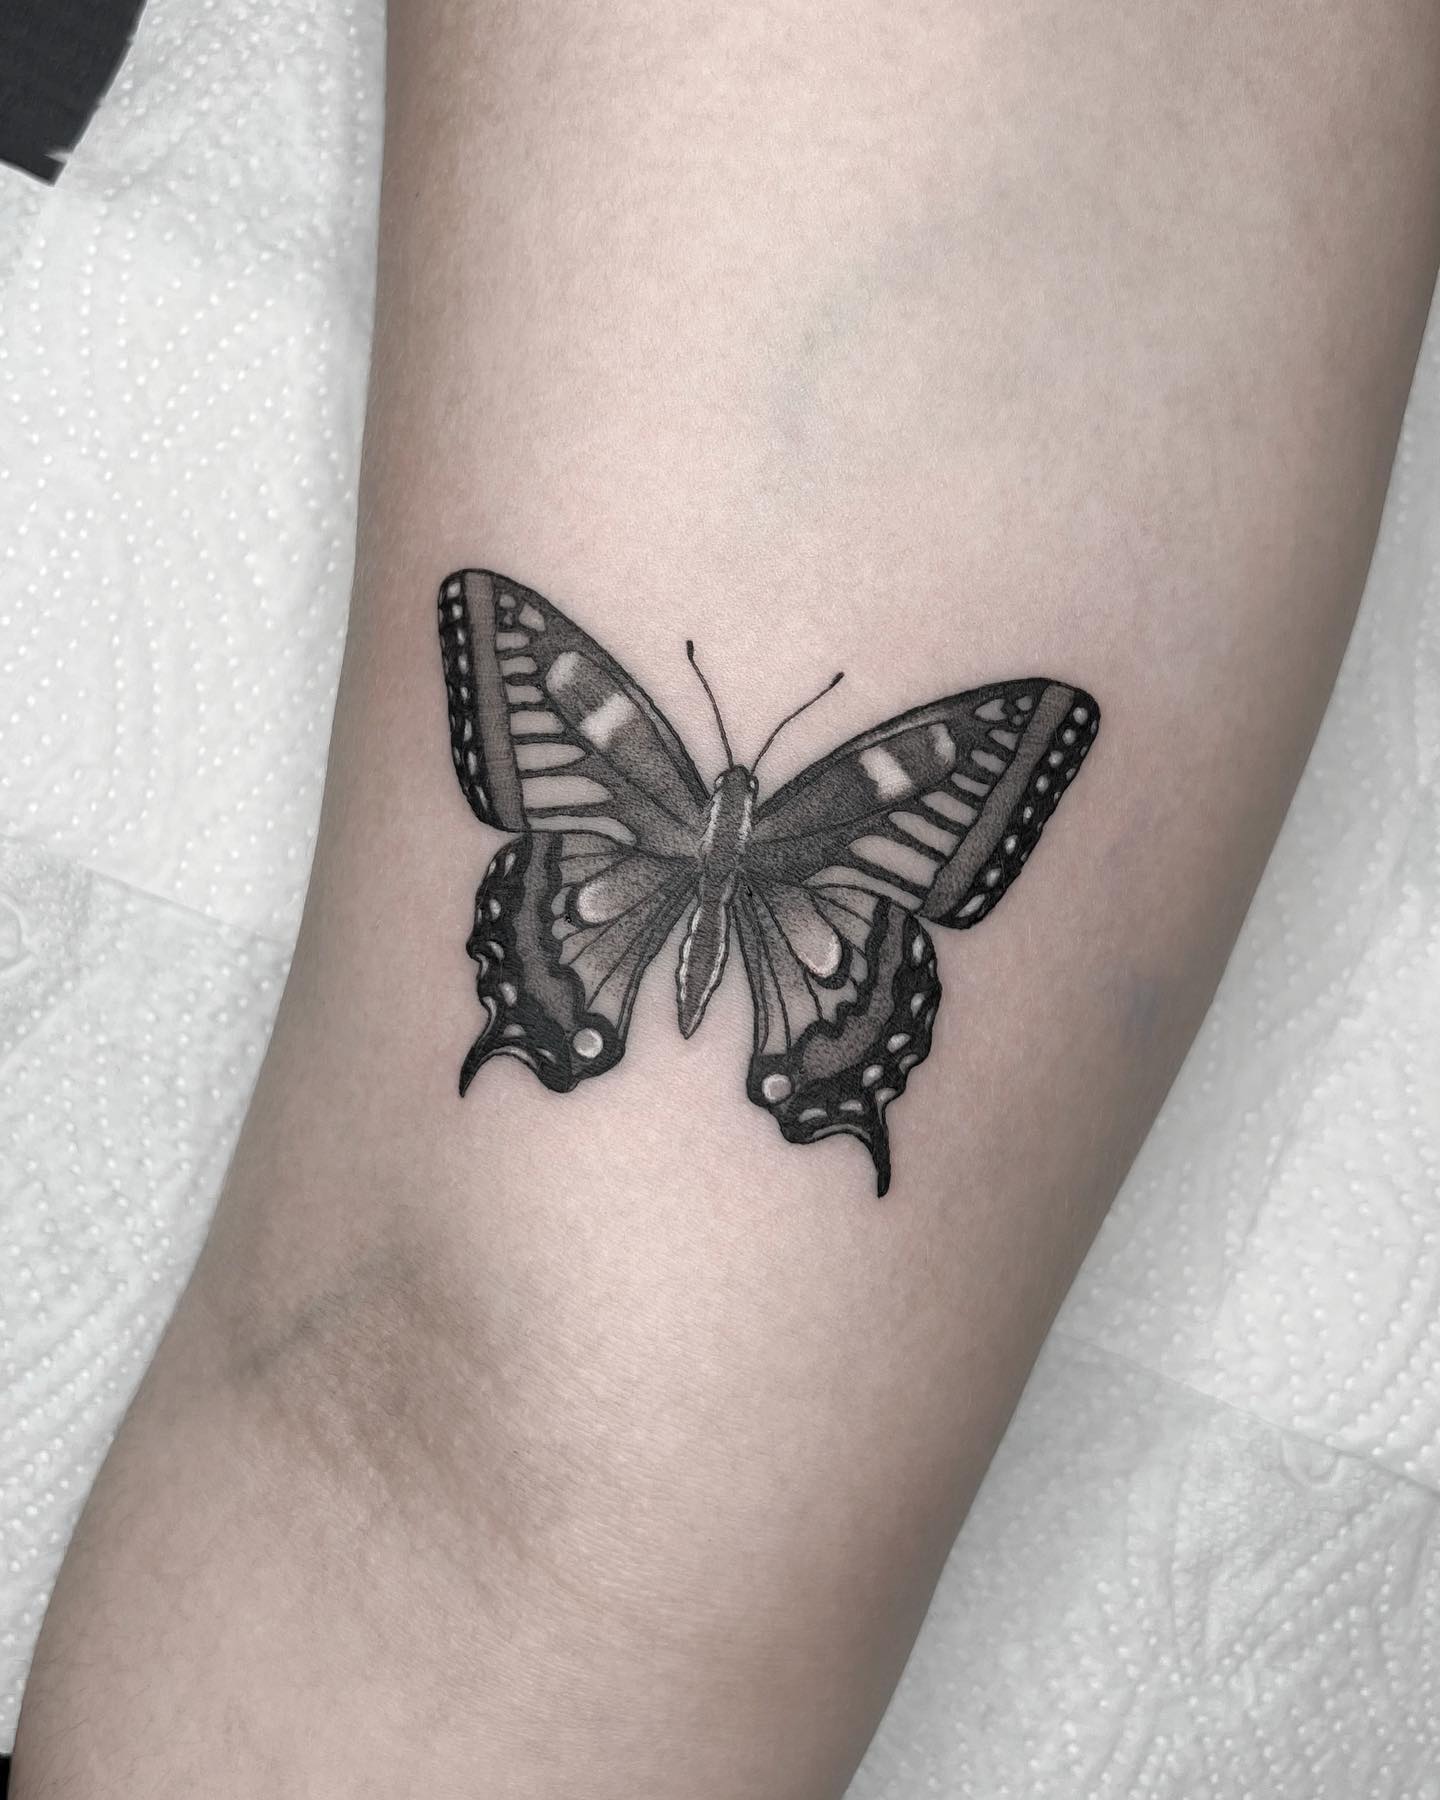 Voorkoms Butterfly Tattoo Waterproof Men and Women Temporary Body Tattoo   Amazonin Beauty